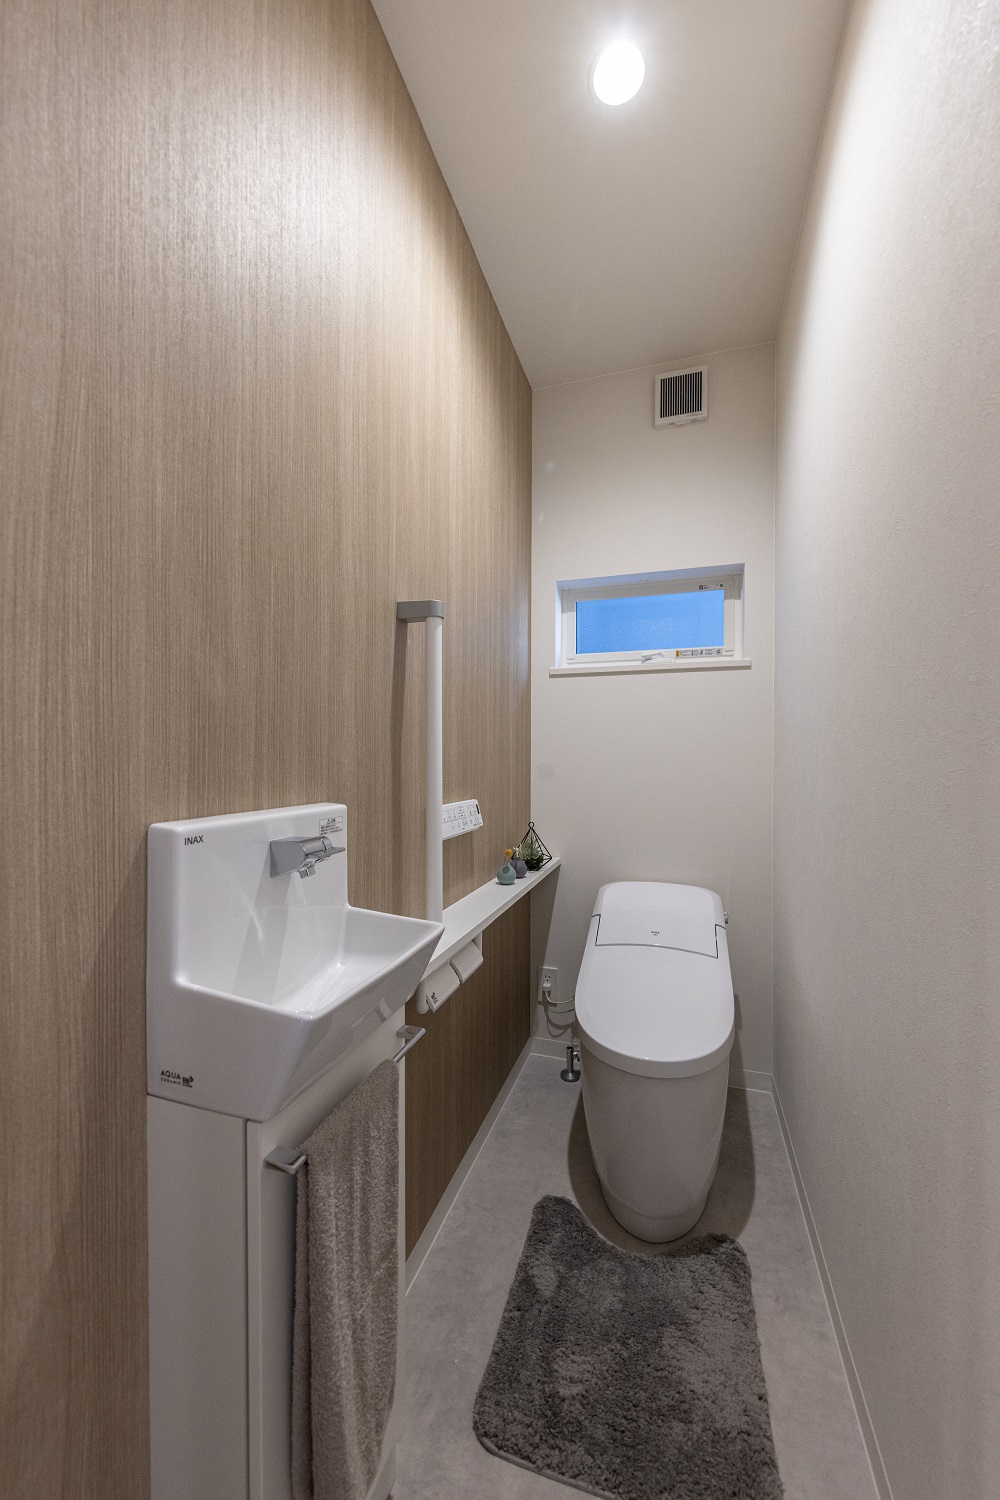 トイレ　セパレートタイプの手洗い器が付いた、ローシルエットトイレでスッキリした印象のトイレ空間。